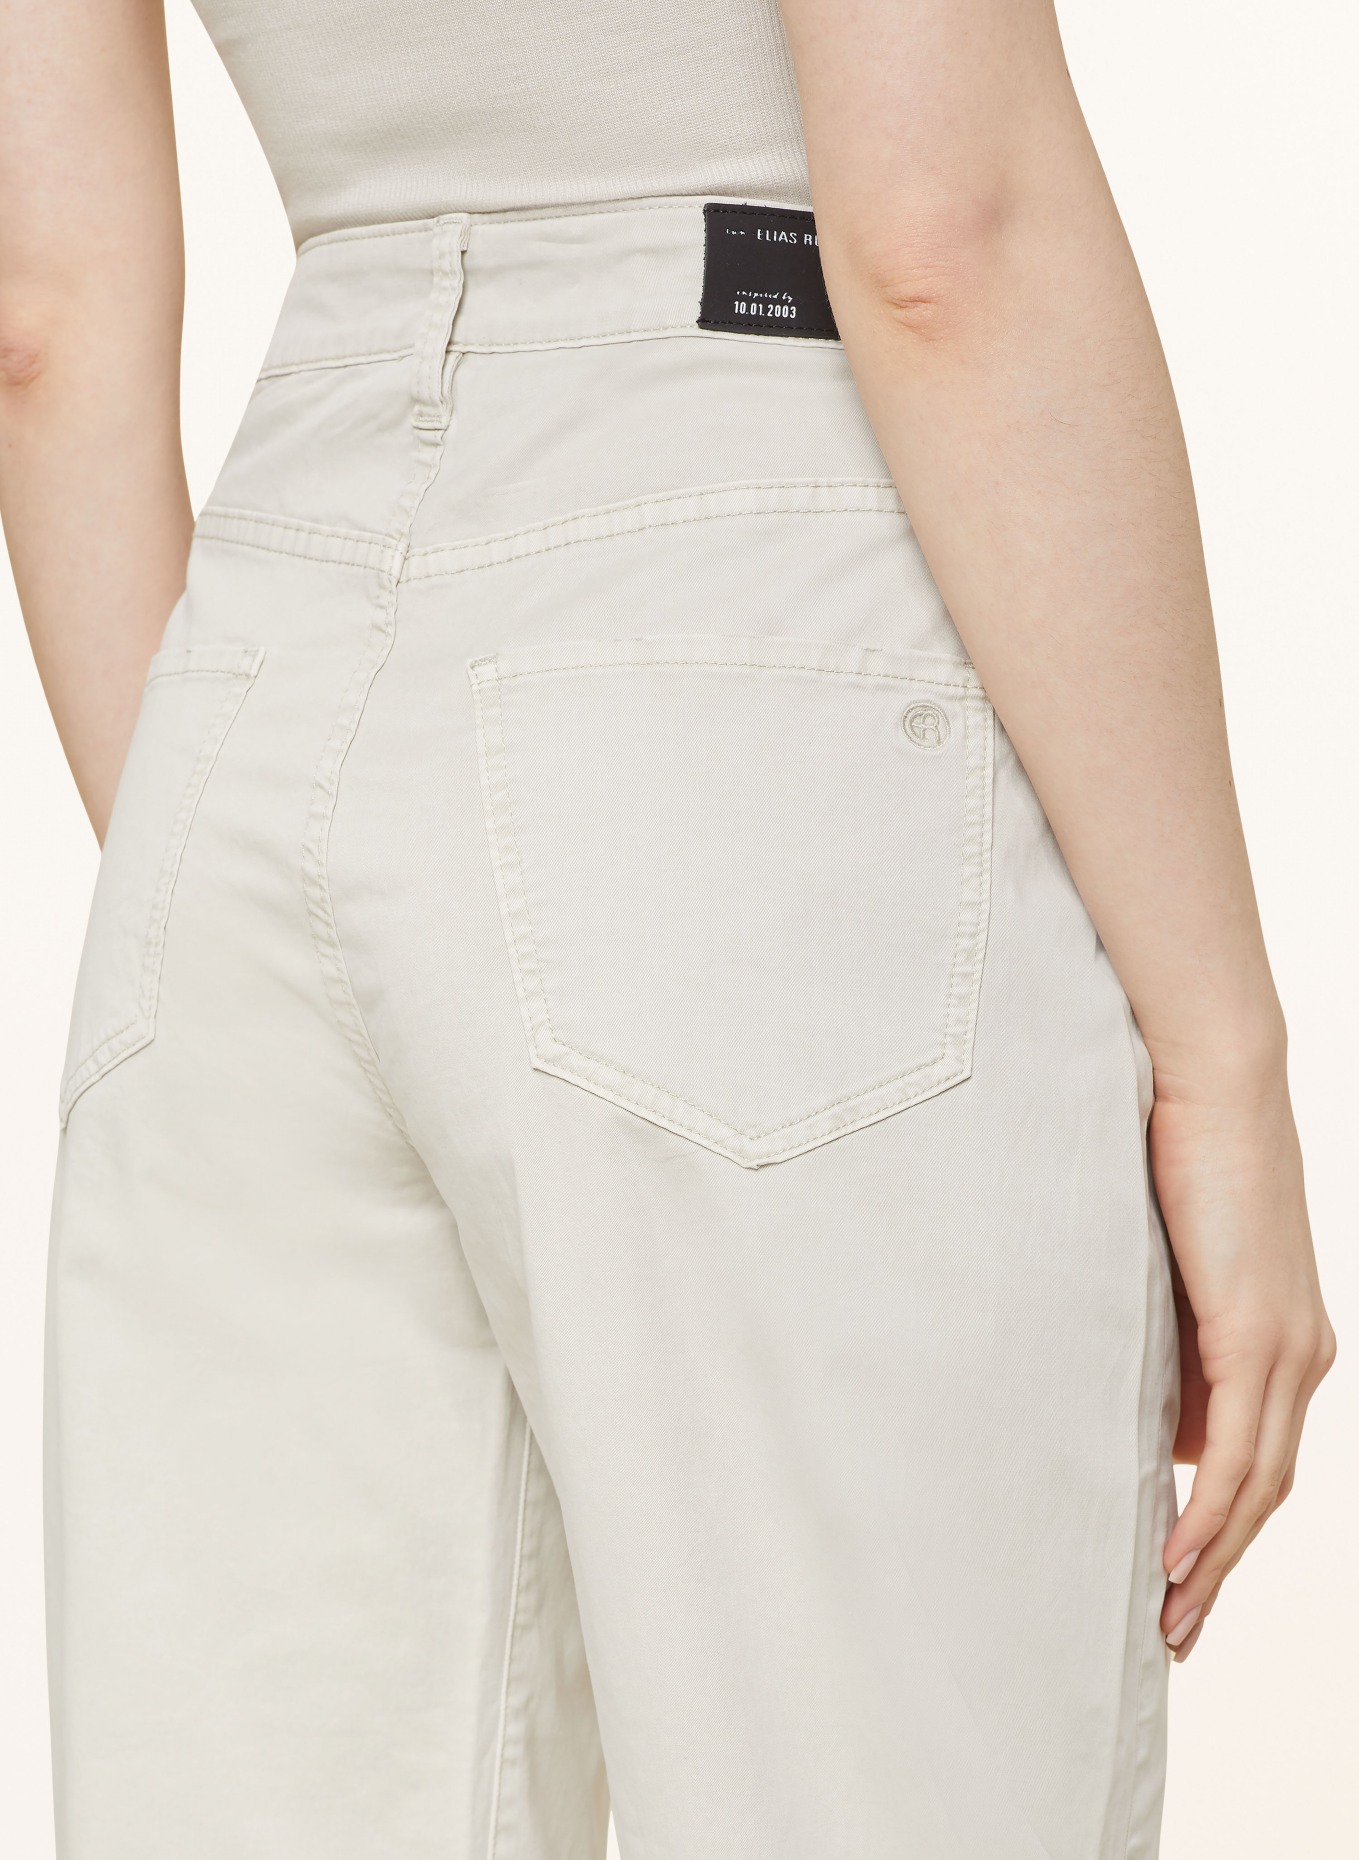 ELIAS RUMELIS Mom jeans ERYOANA, Color: 844 pearl grey (Image 5)